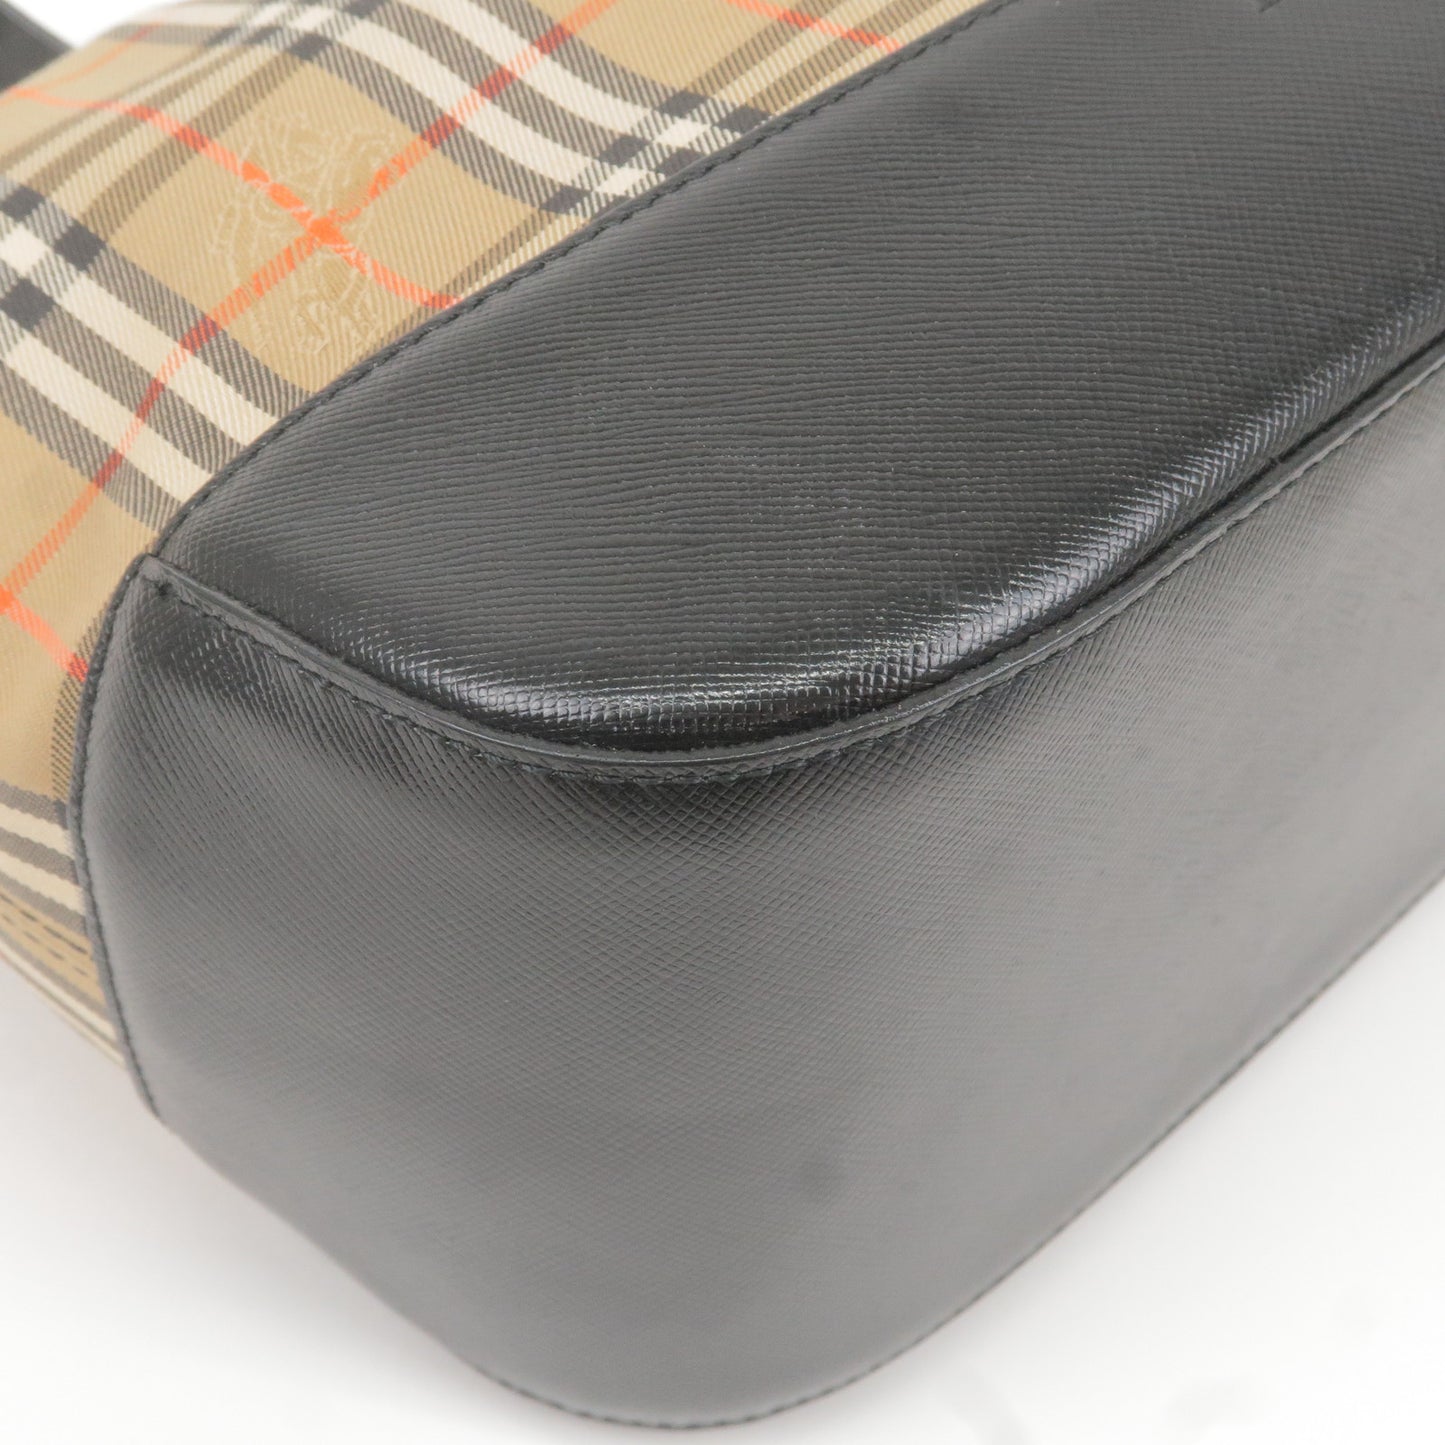 BURBERRY Nova Plaid Canvas Leather Shoulder Bag Hand Bag